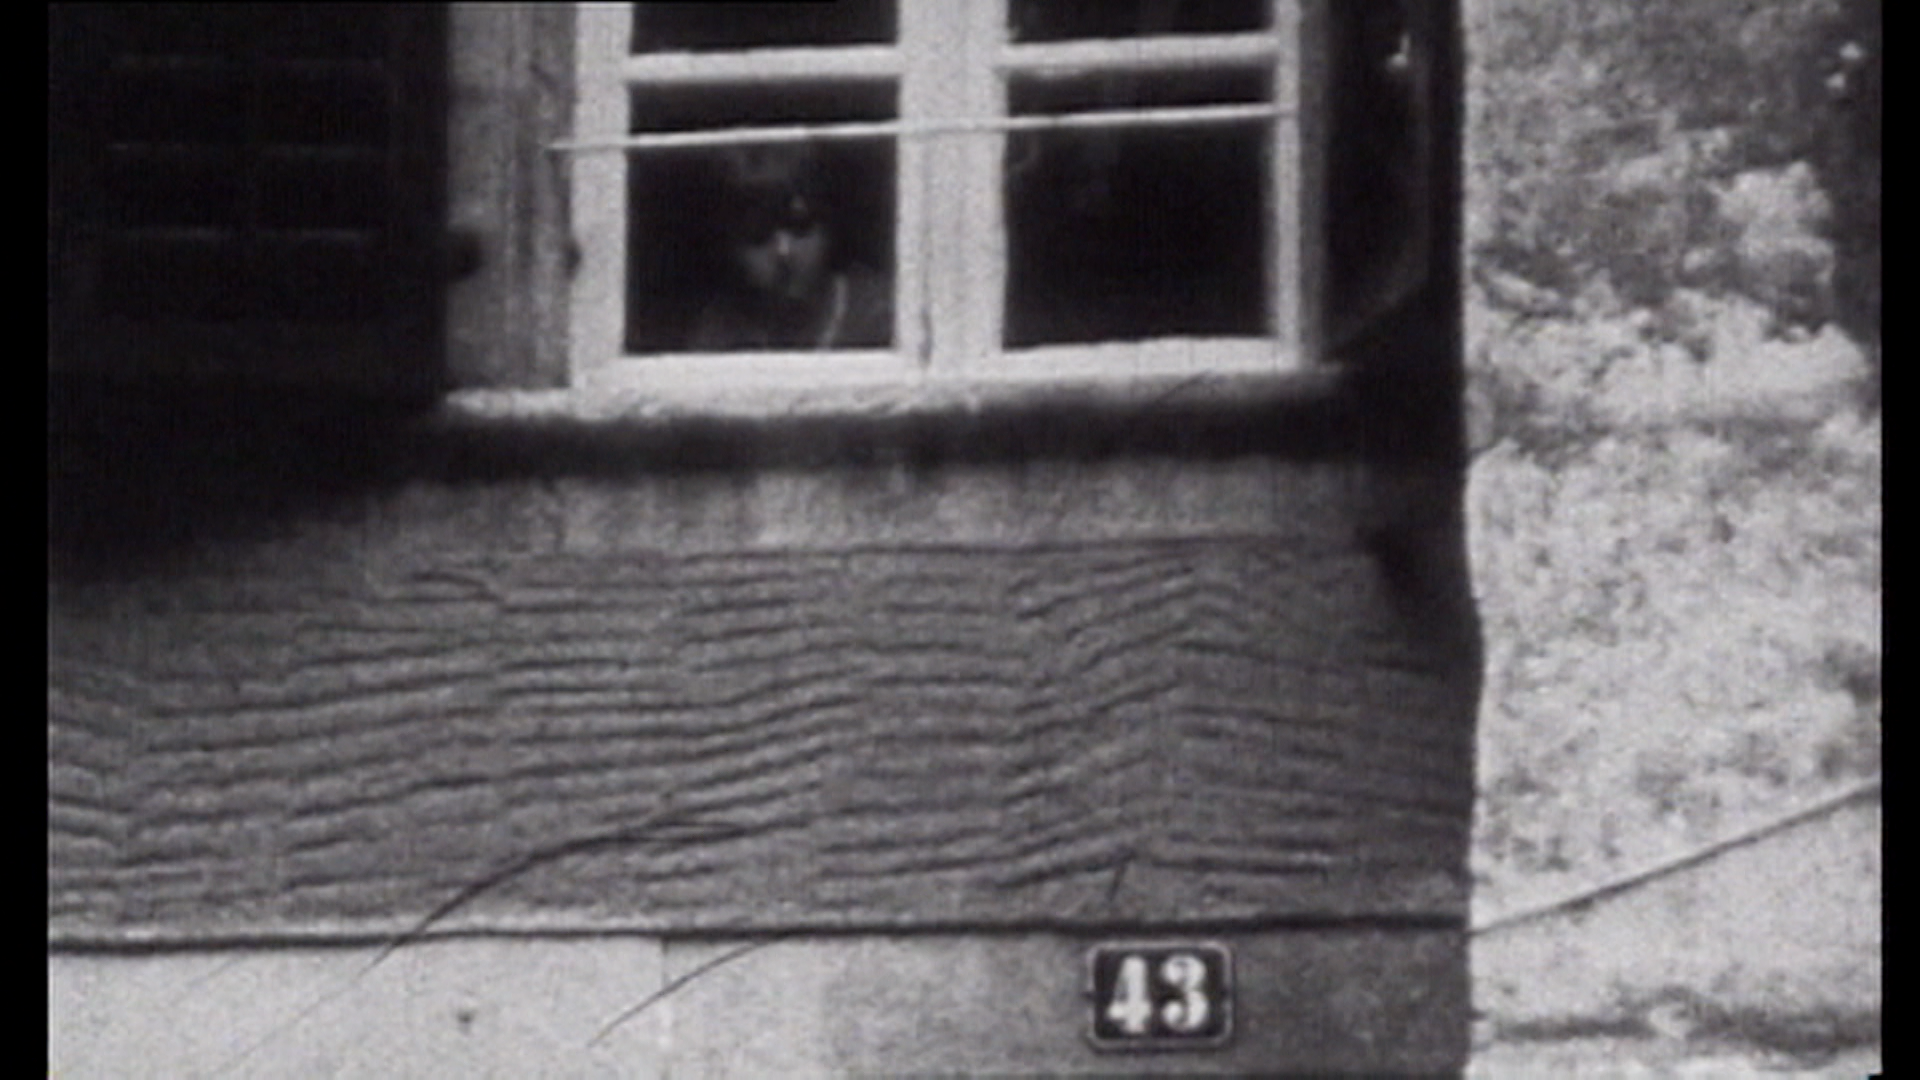 Bambino che osserva l esterno di casa sua dall angolo basso del vetro di una finestra